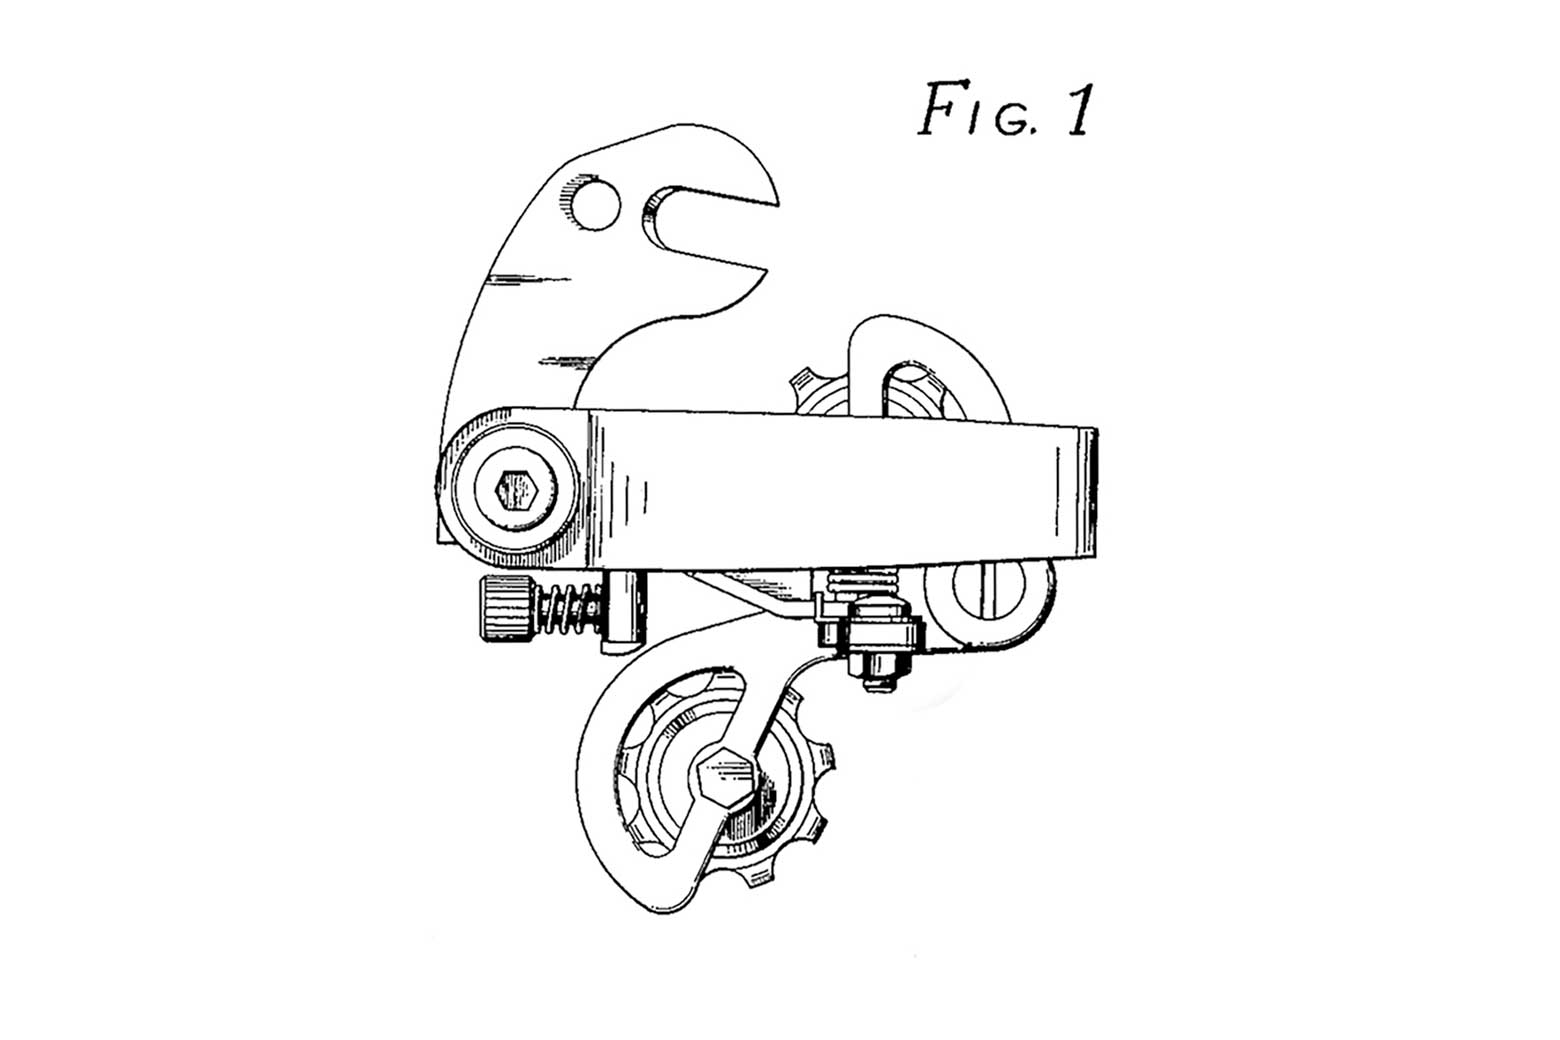 US Design Patent 222,820 main image